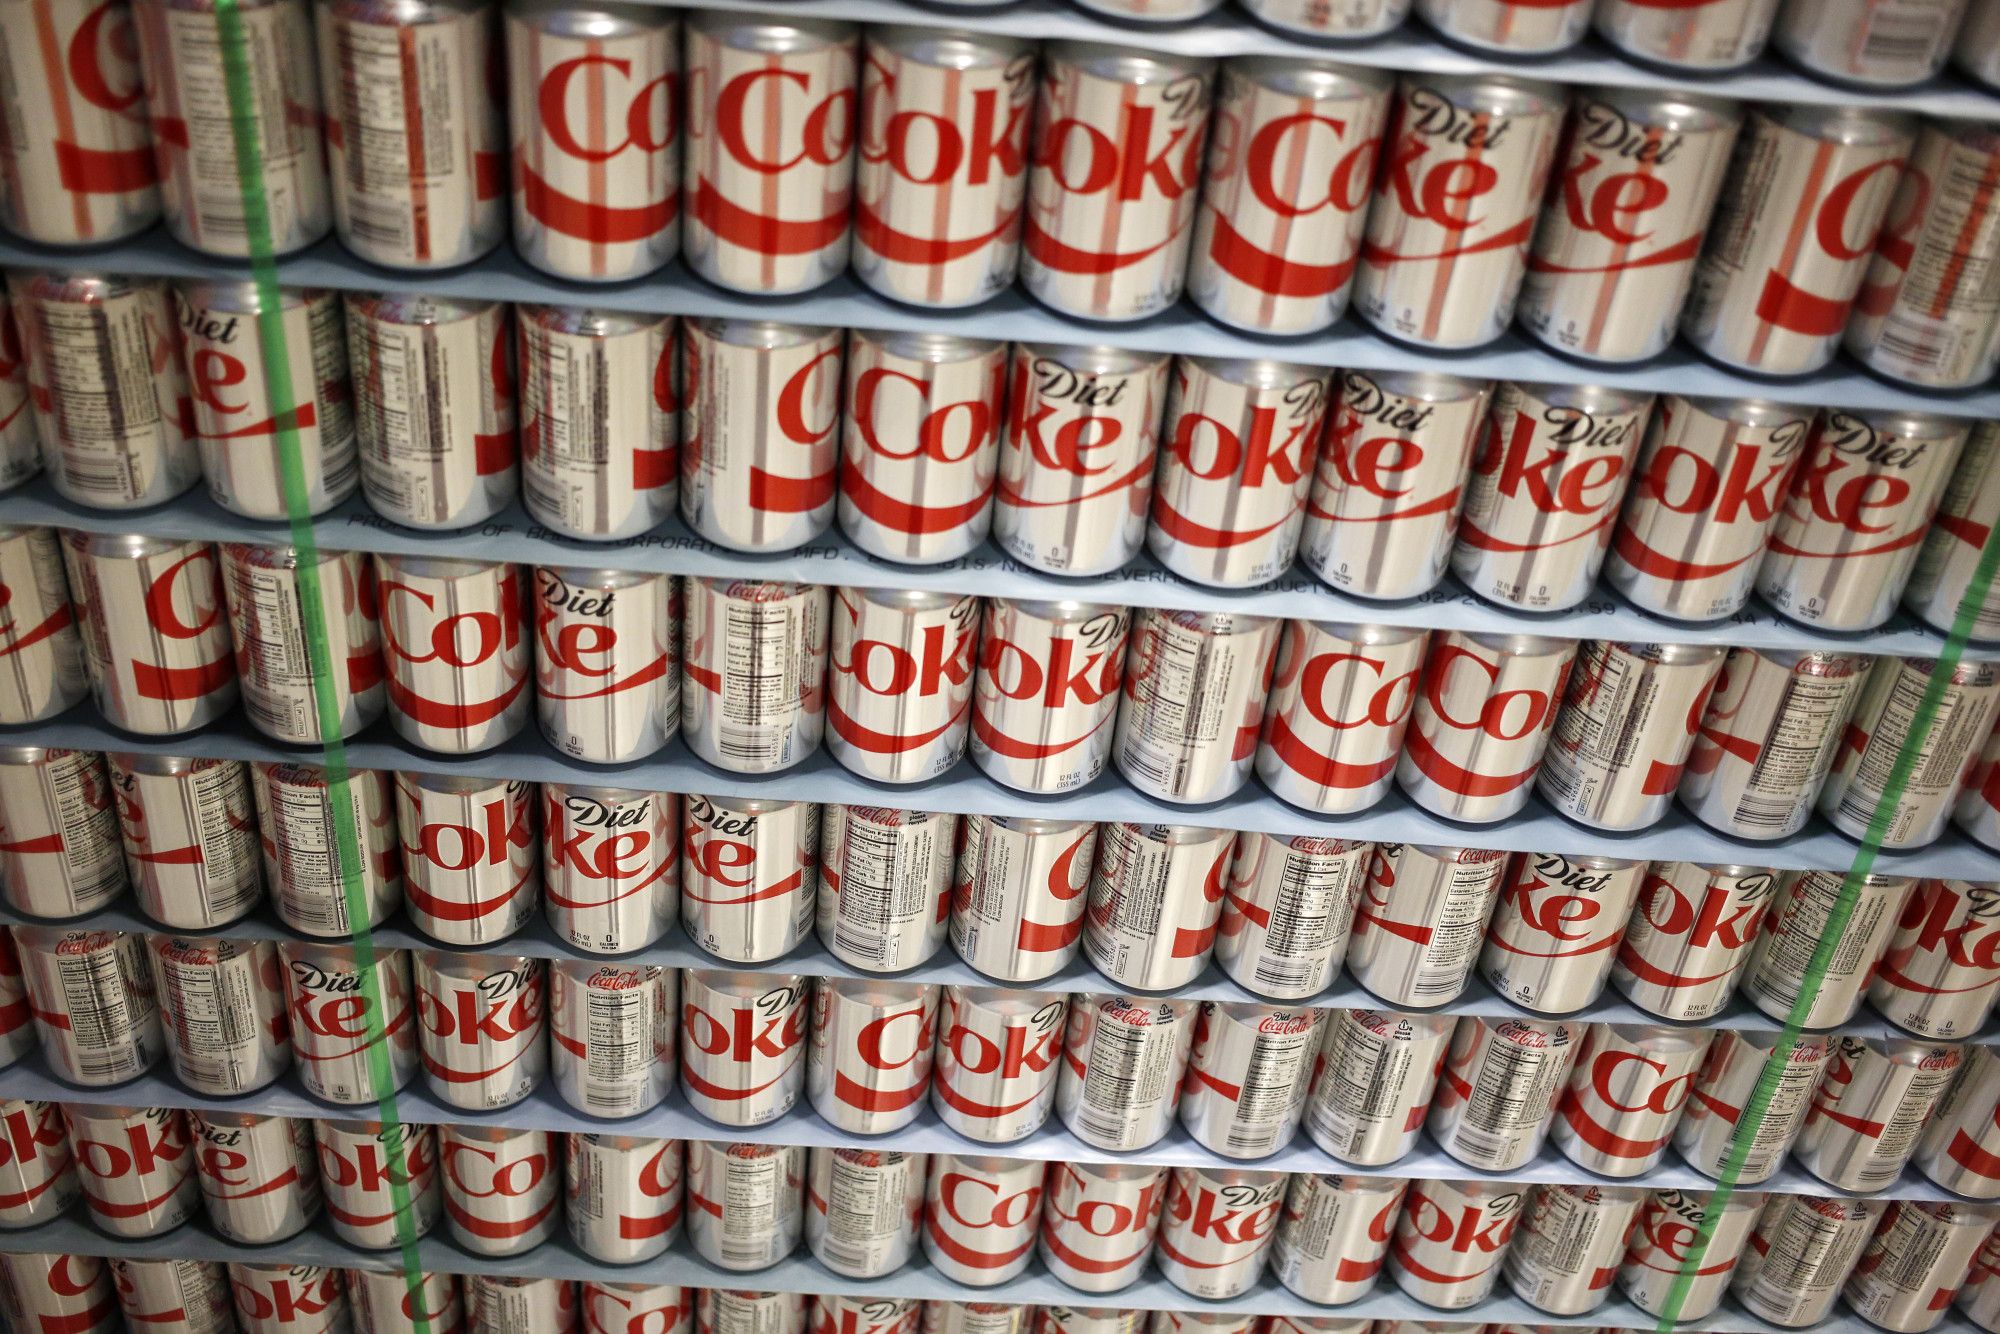 A pallet of Coca-Cola Co. Diet Coke.